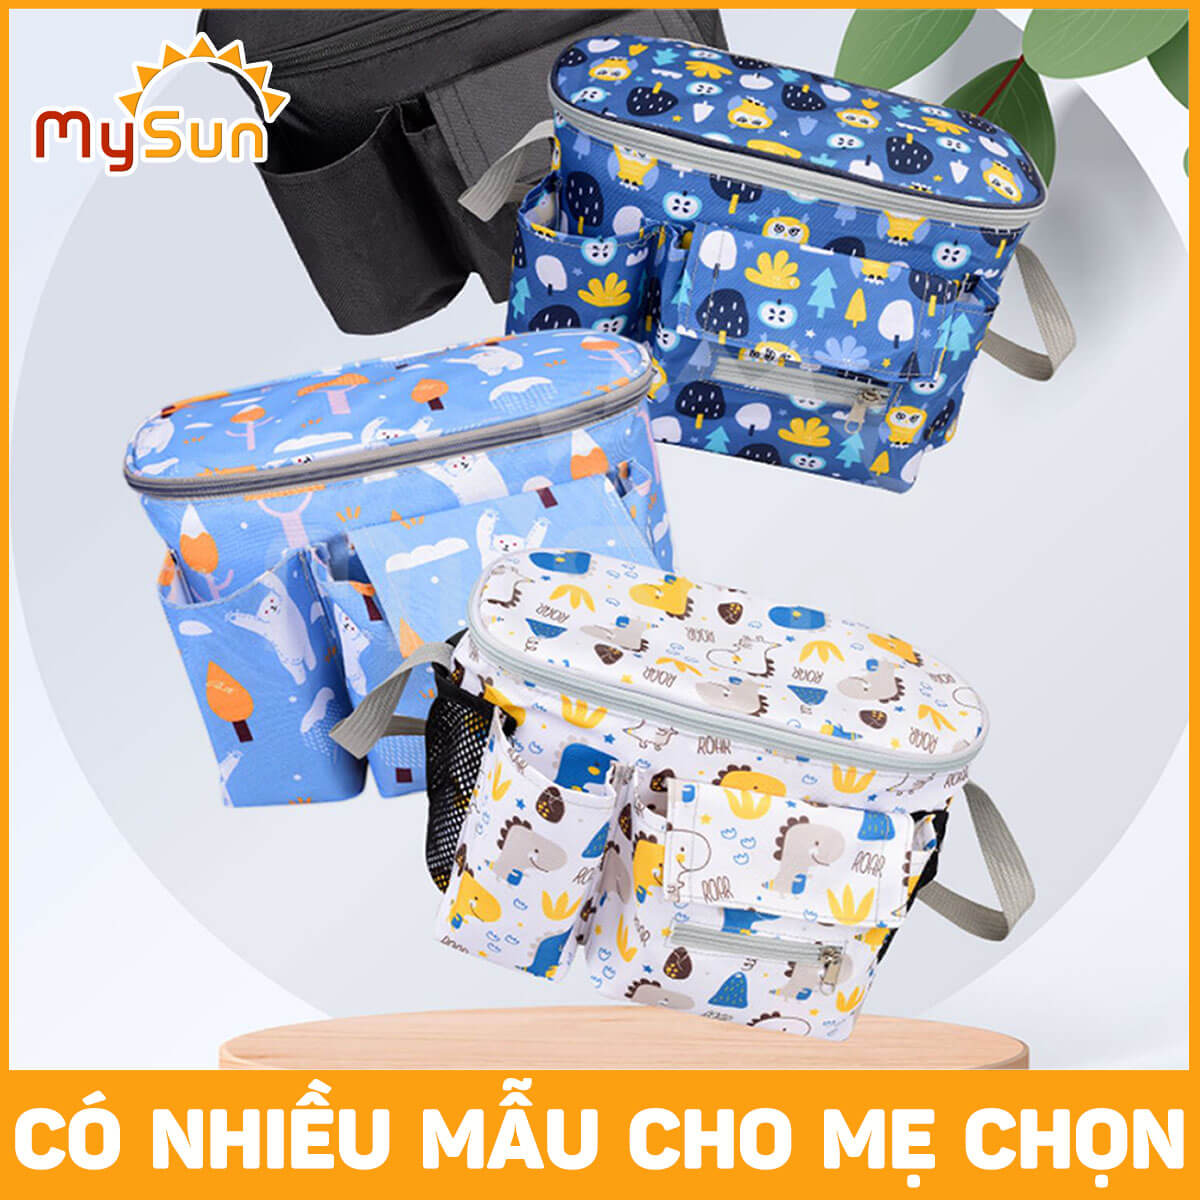 Túi bỉm sữa, đựng đồ cho em bé sơ sinh và mẹ vải Oxford cao cấp chính hãng MySun